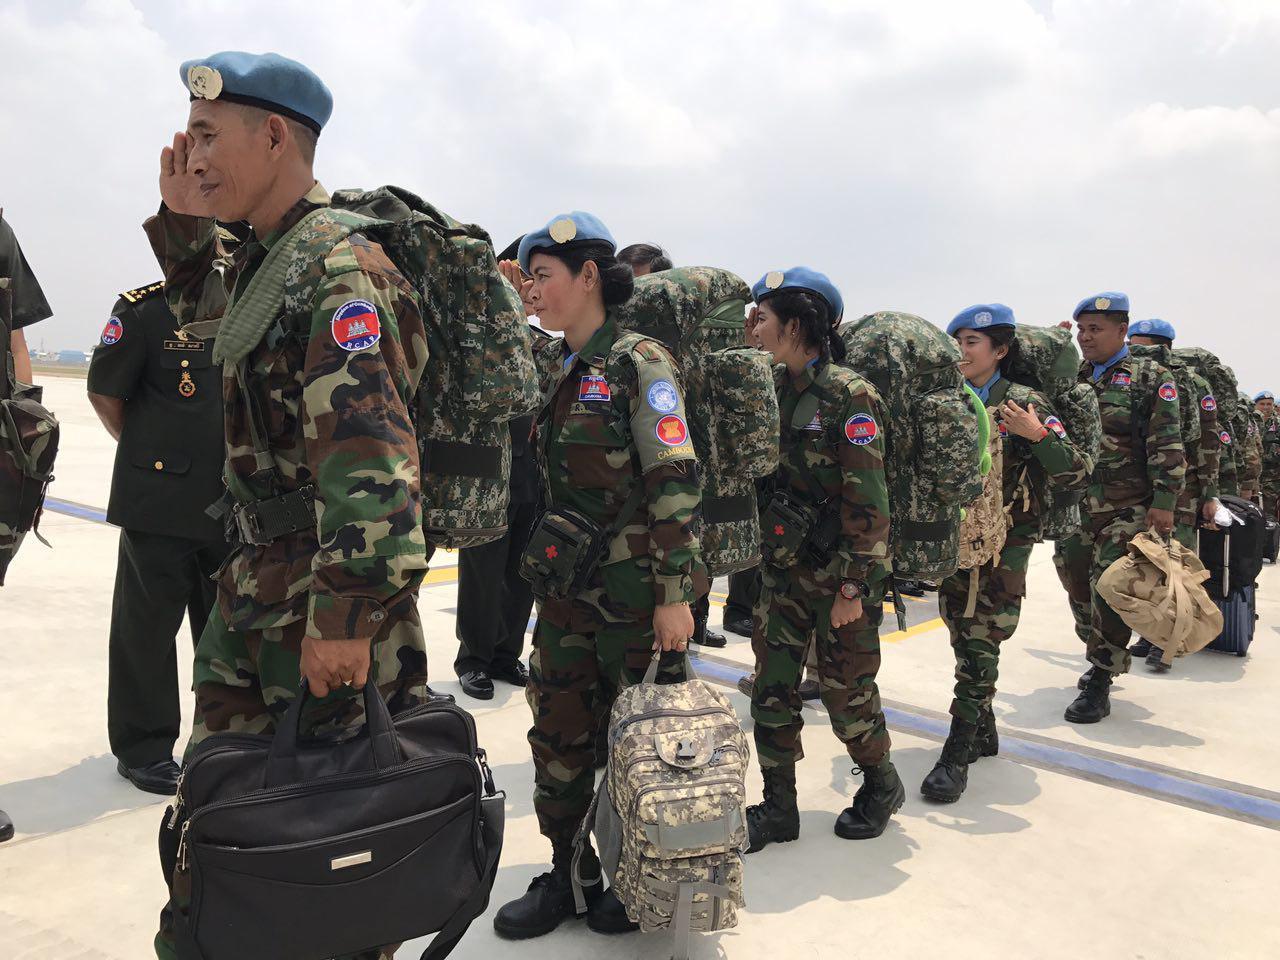 
中国向联合国停战监督组织派出5名军事观察员(图)